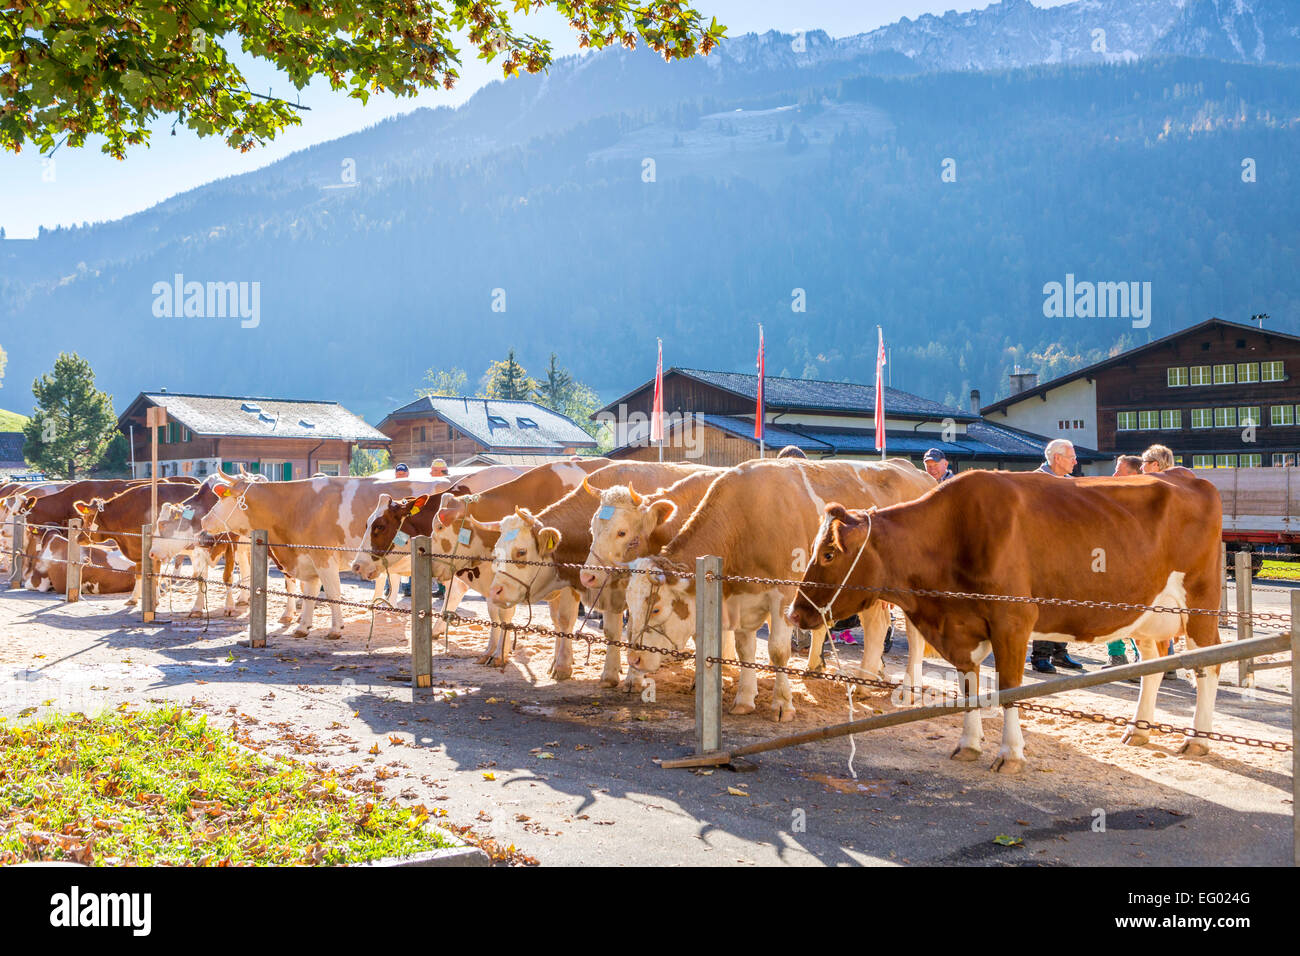 Cattle market, Därstetten, Kanton Bern, Switzerland. Stock Photo